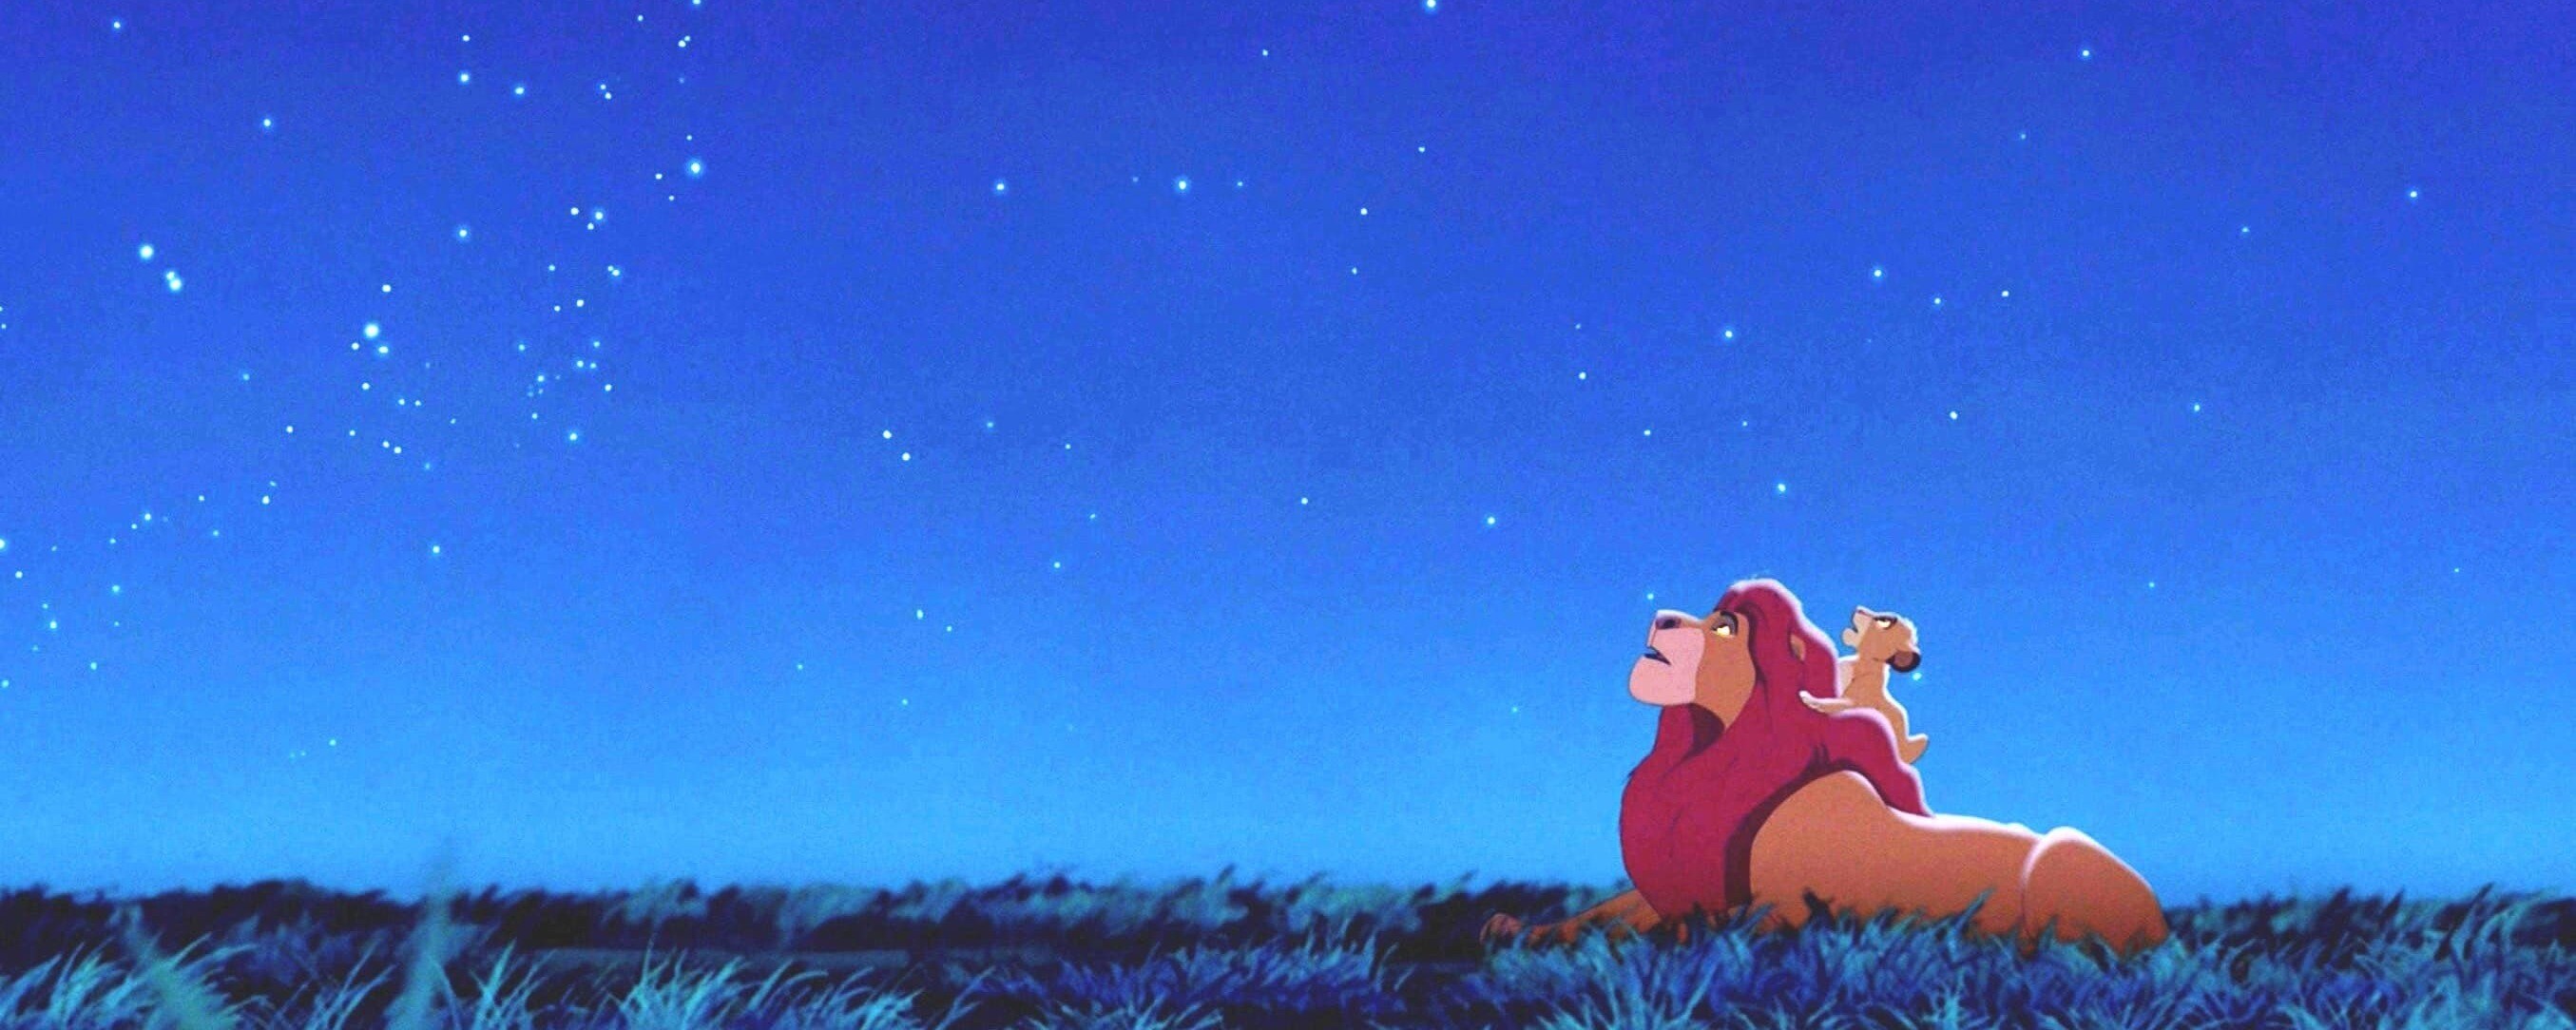 Mufasa and Simba looking up at the stars